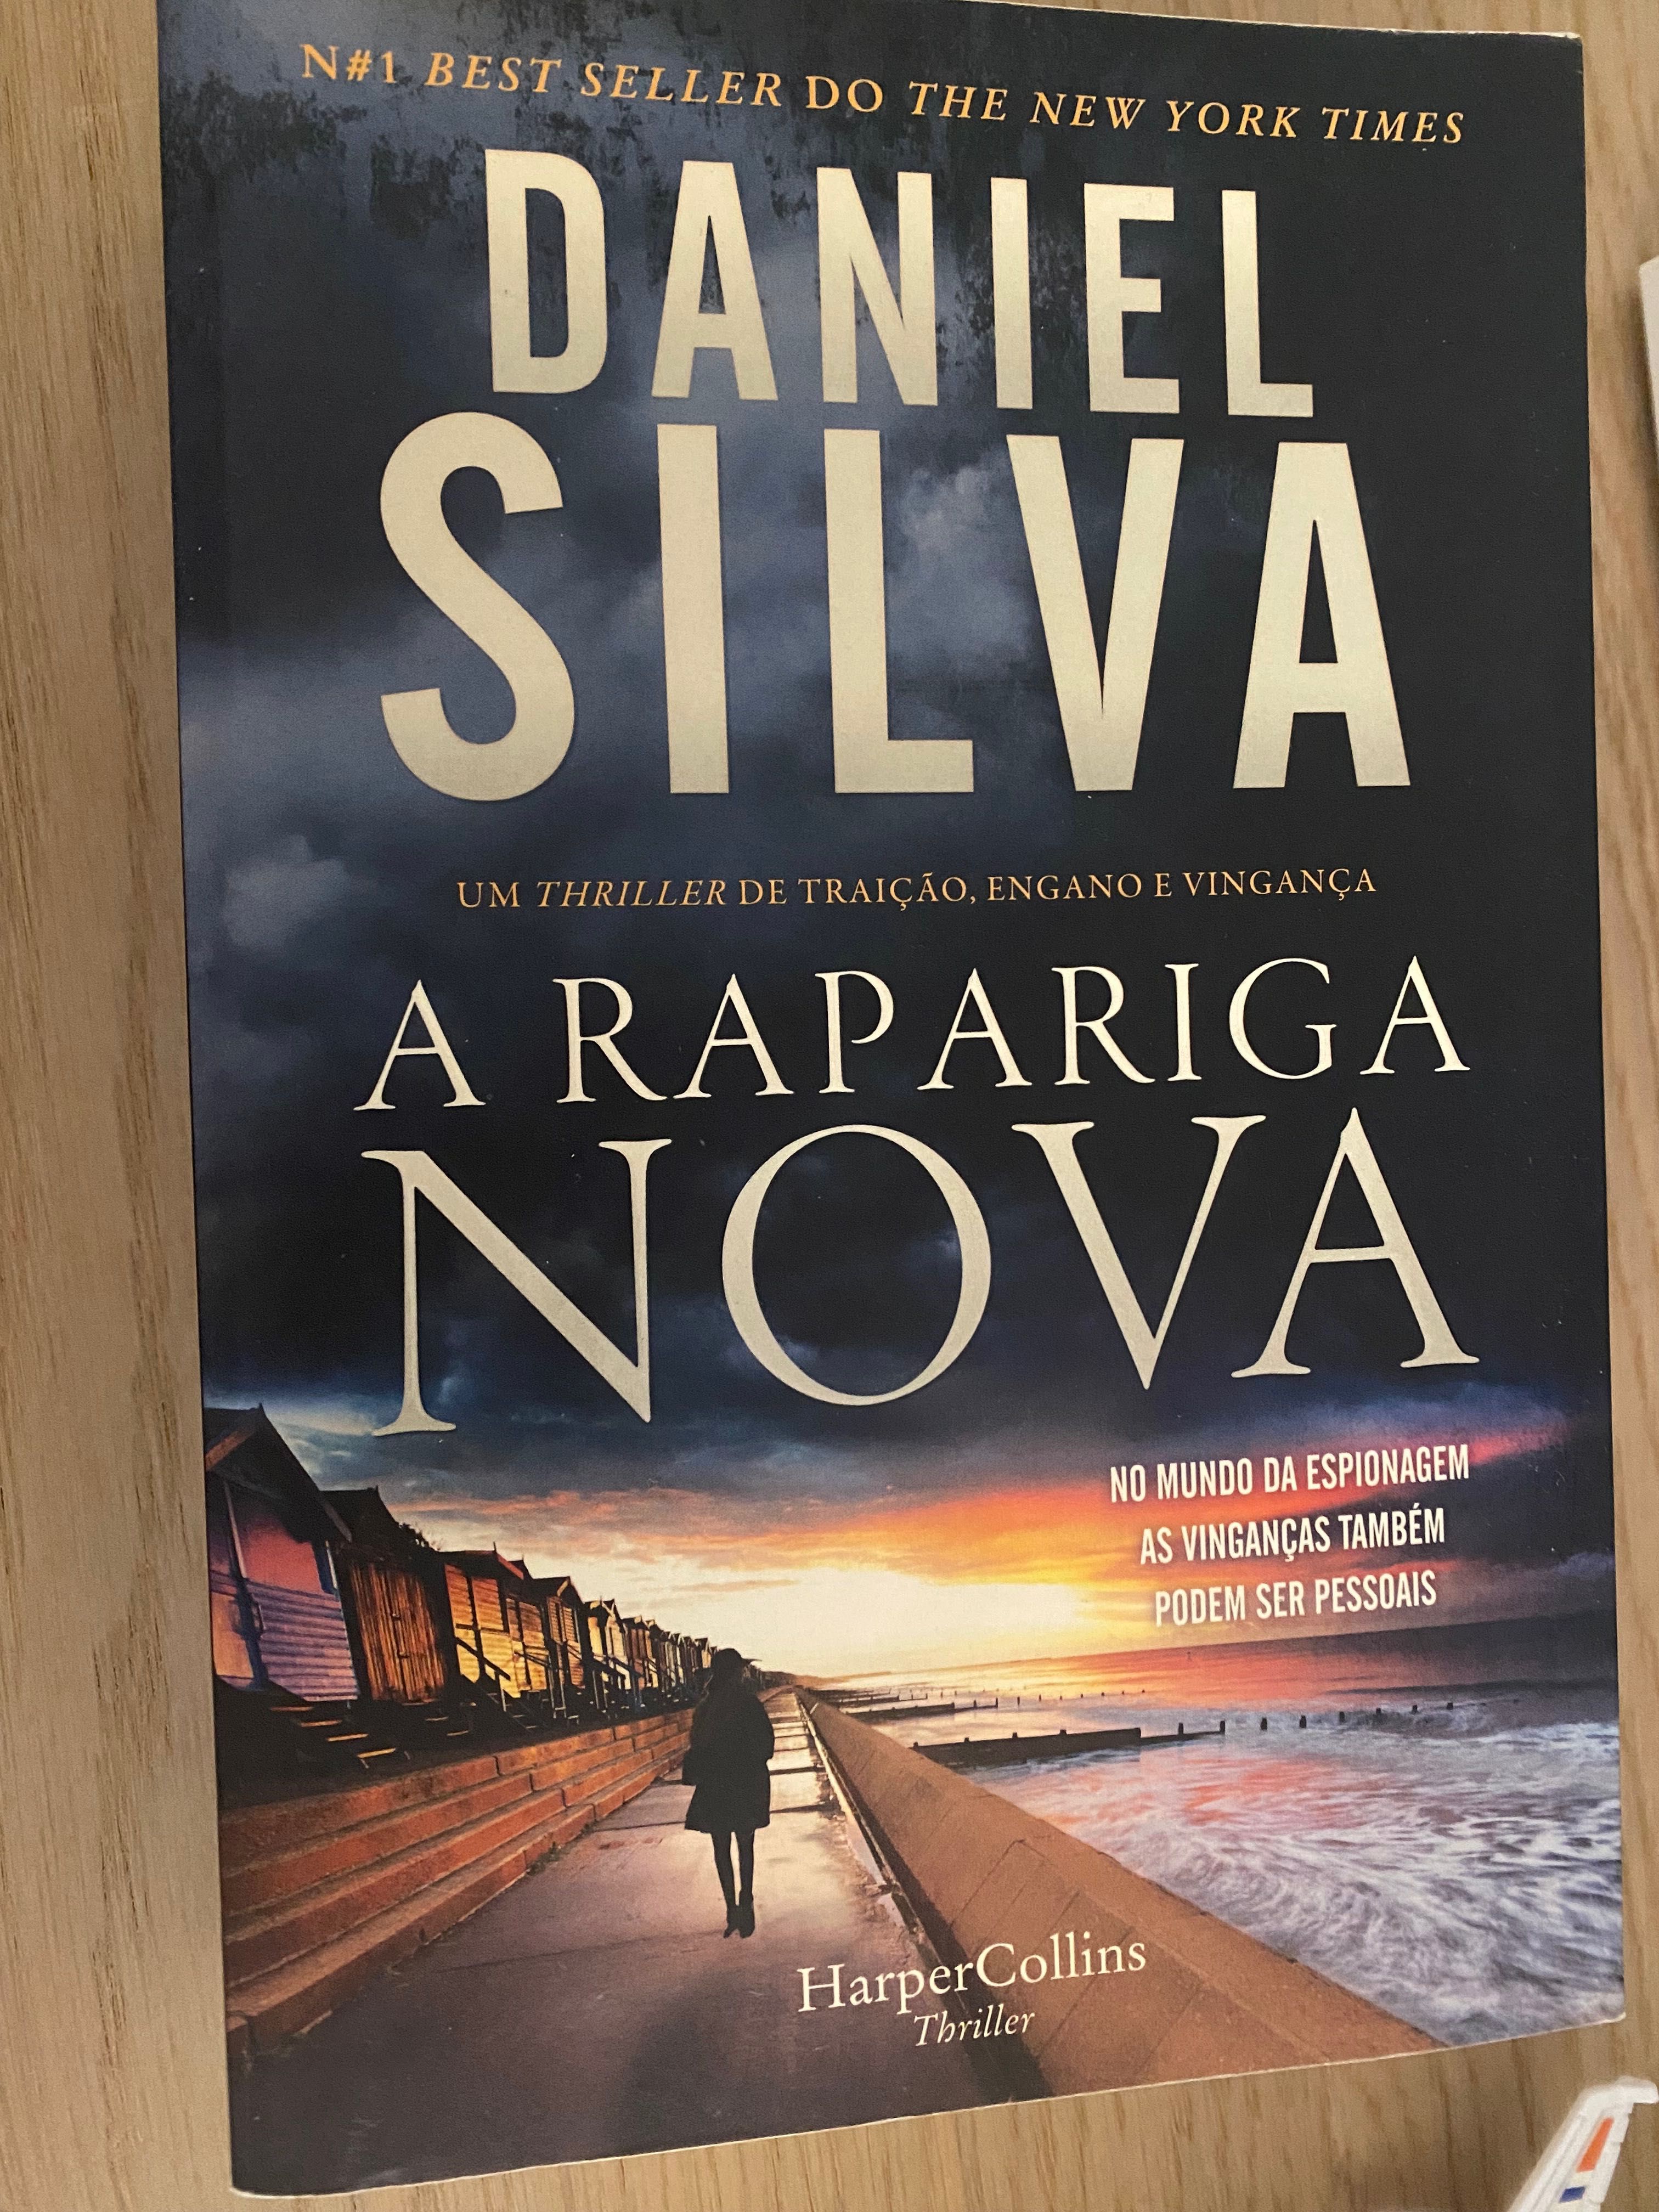 Livro “A rapariga nova” do autor Daniel Silva